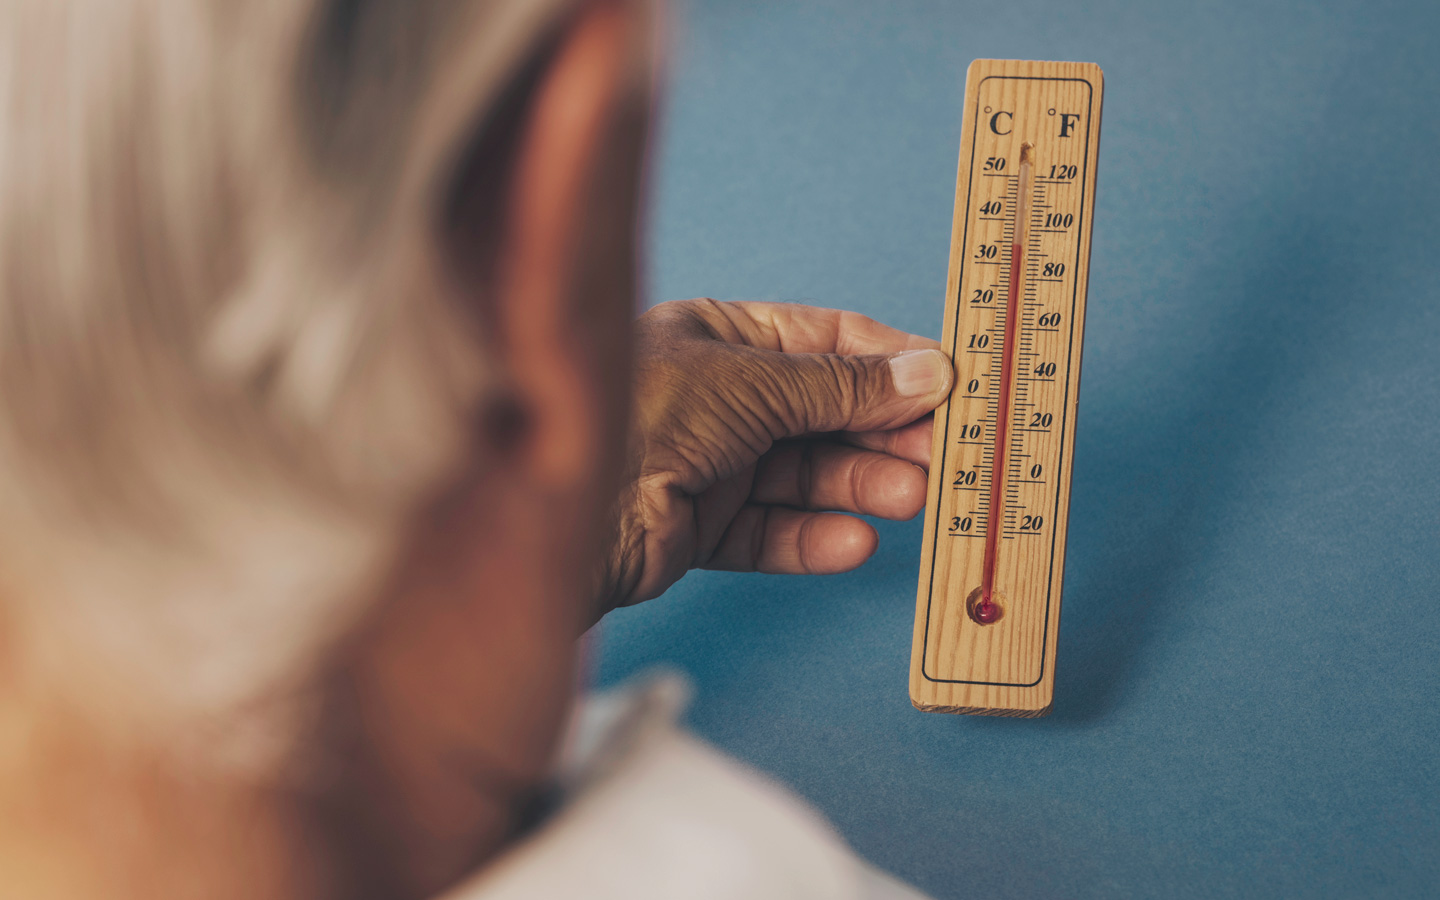 Foto: Eine ältere Person hält ein Thermometer in der Hand, das circa 35 Grad anzeigt.